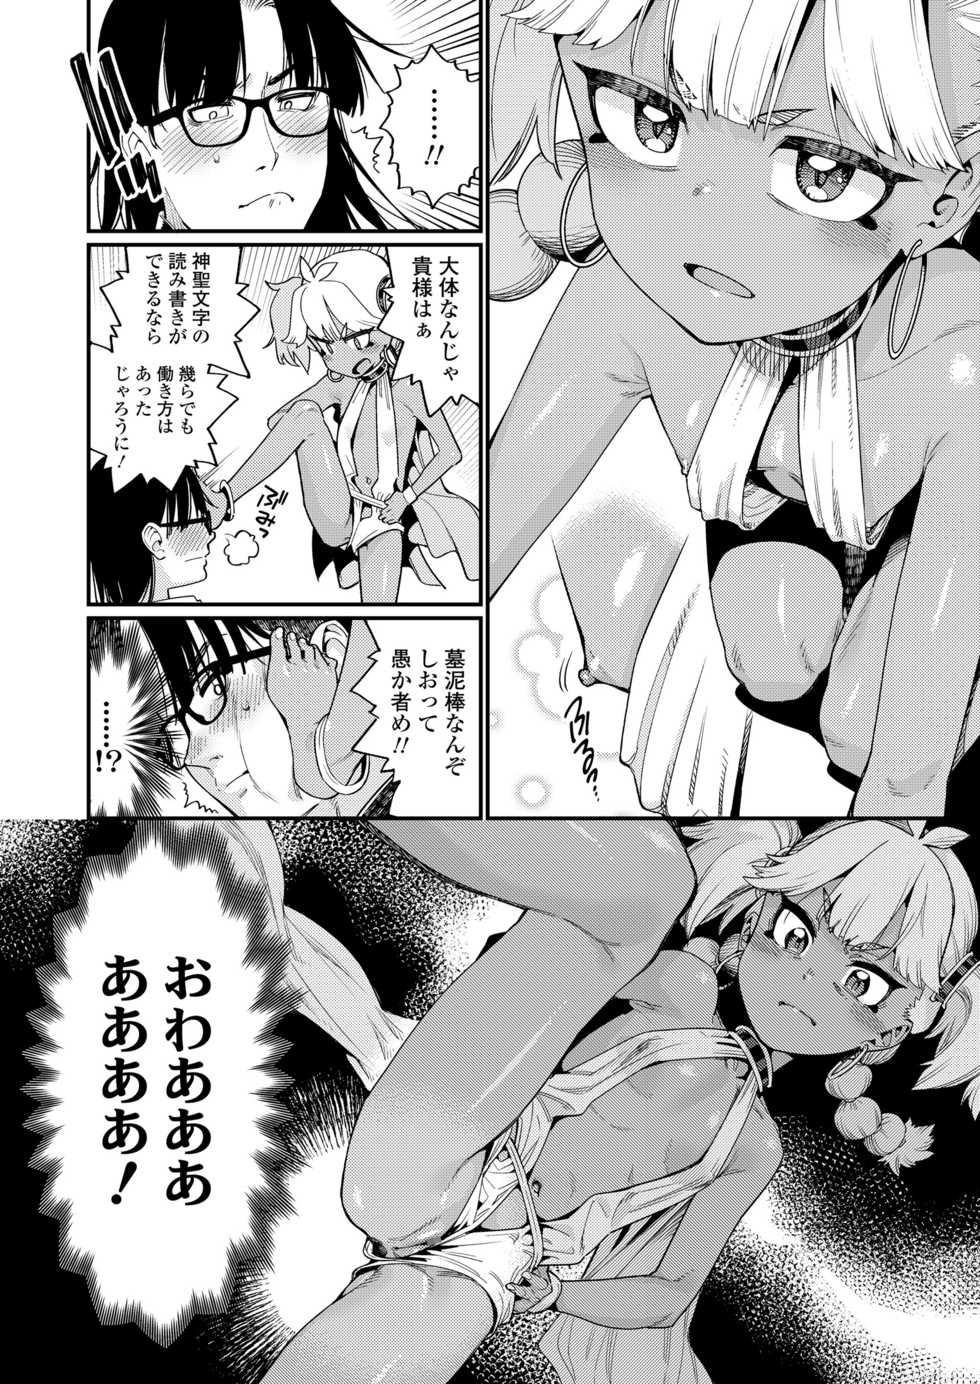 Towako 10 [Digital] - Page 12